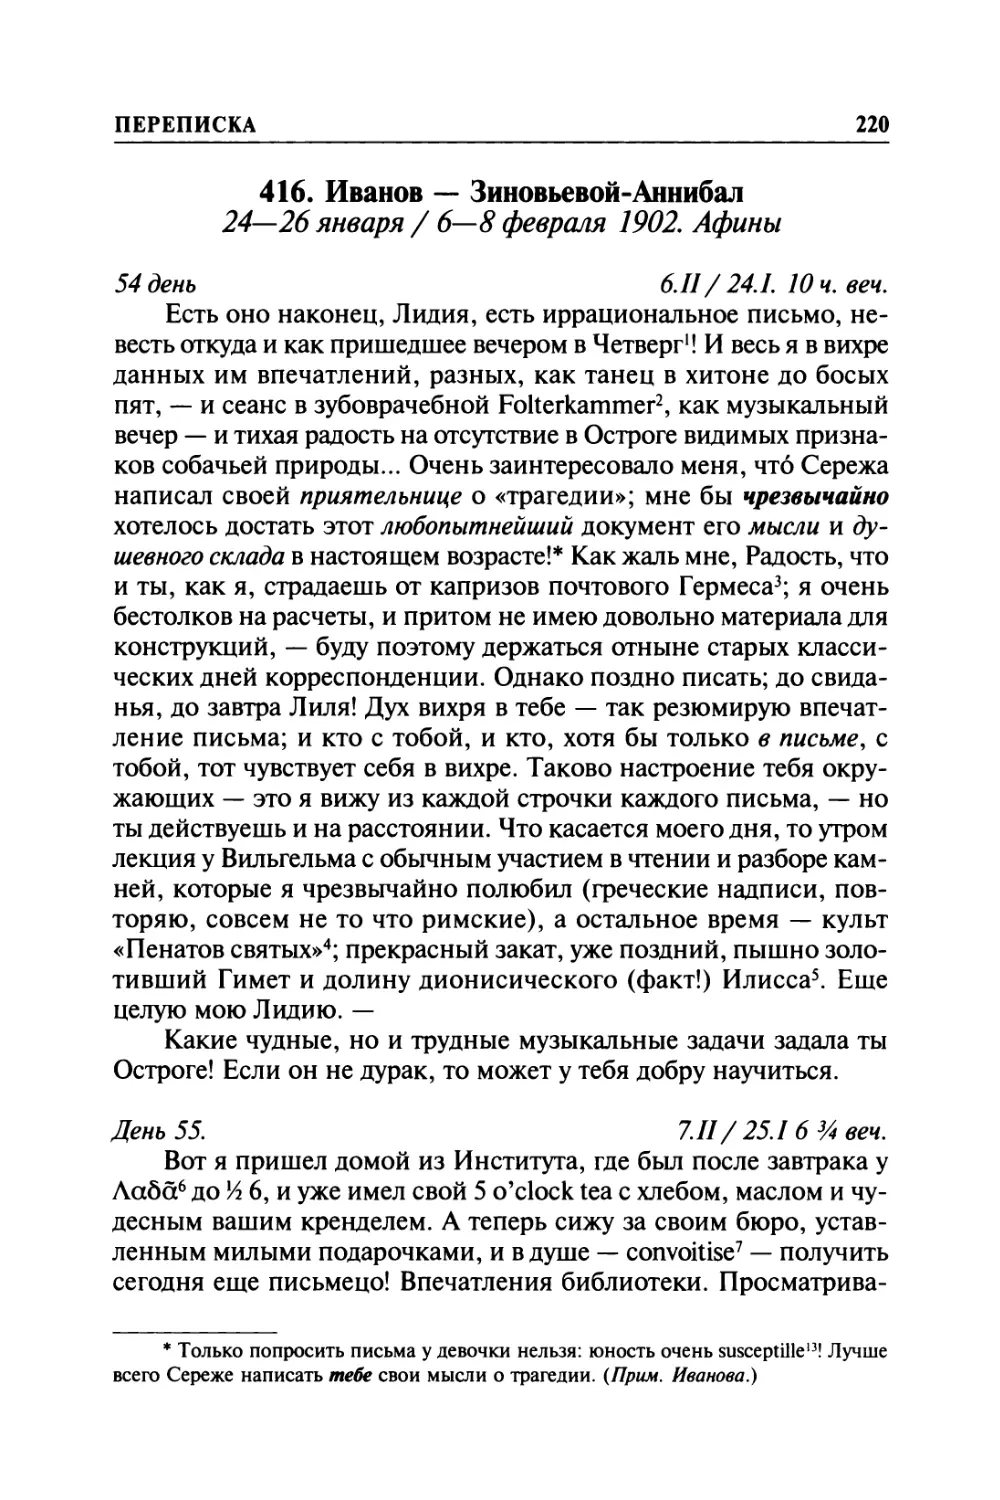 416. Иванов — Зиновьевой-Аннибал. 24—26 января / 6—8 февраля 1902. Афины